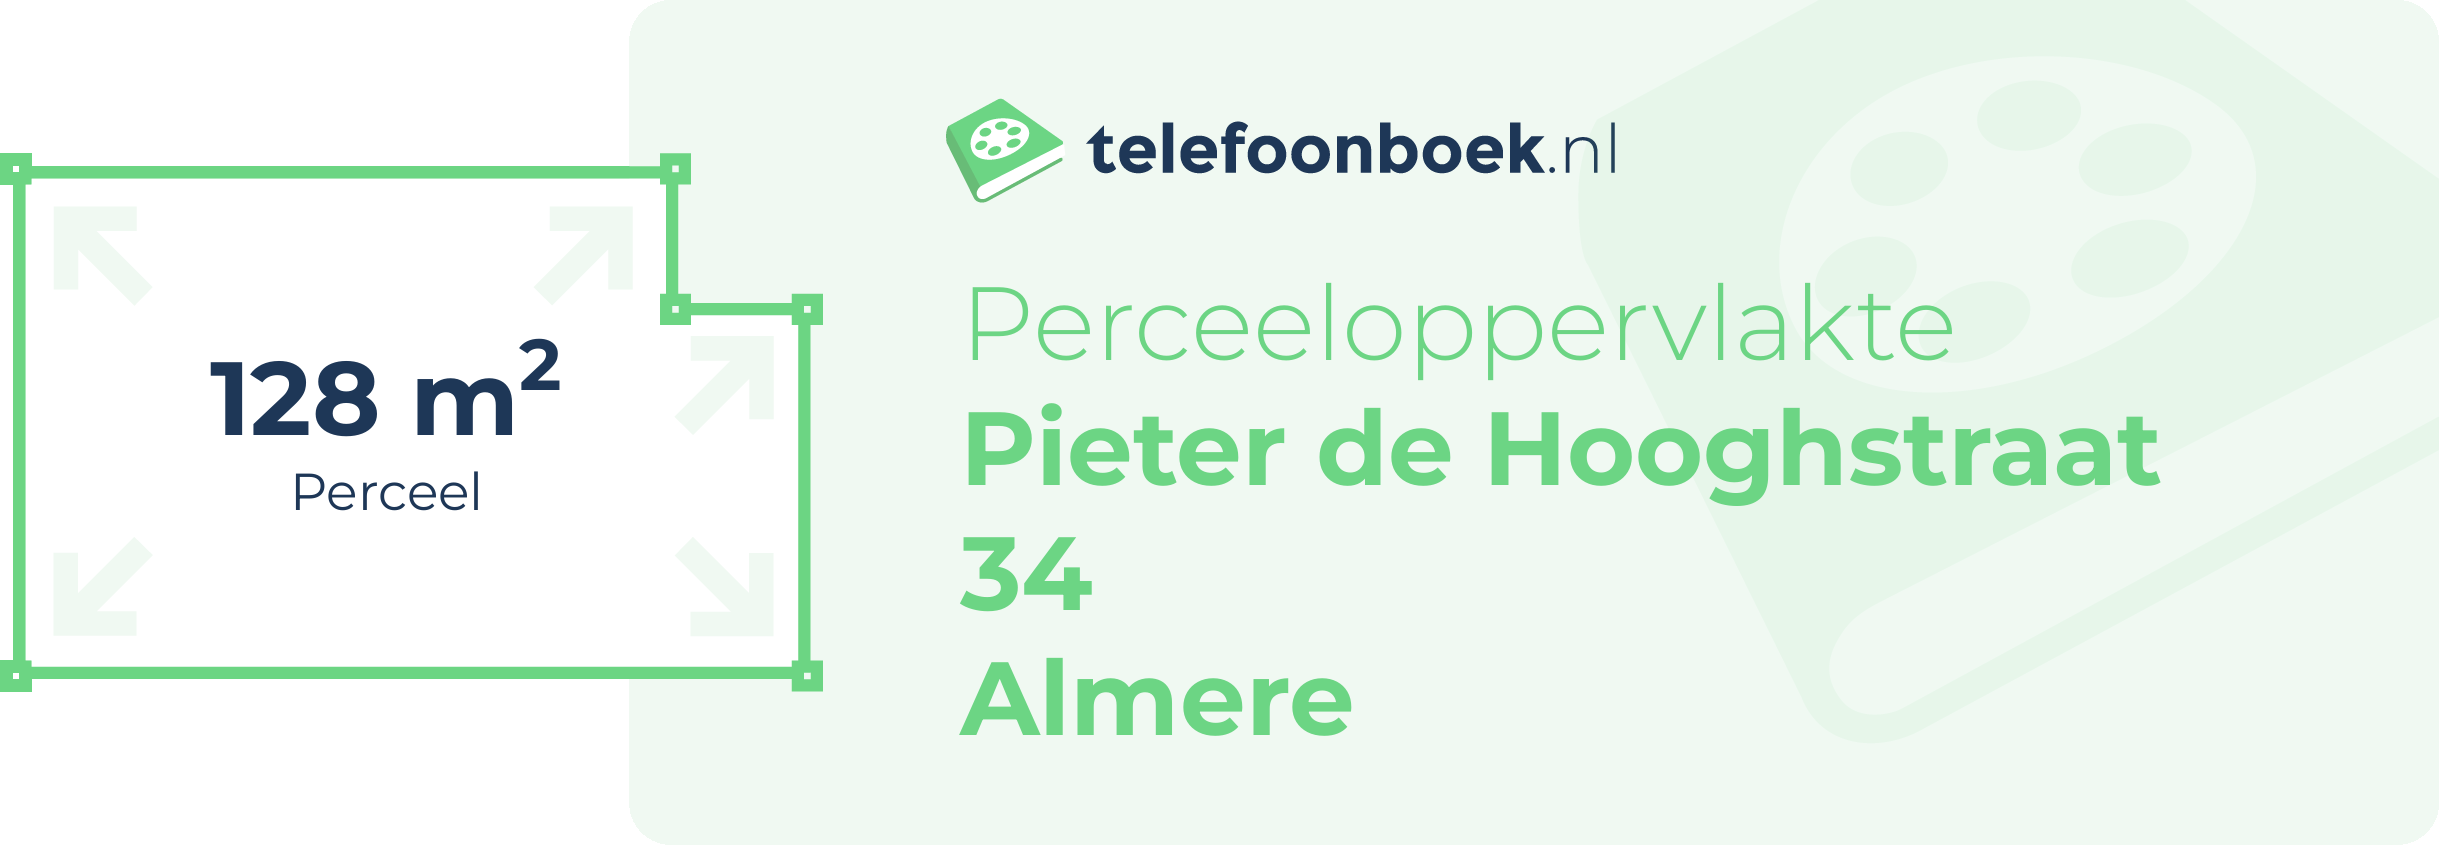 Perceeloppervlakte Pieter De Hooghstraat 34 Almere